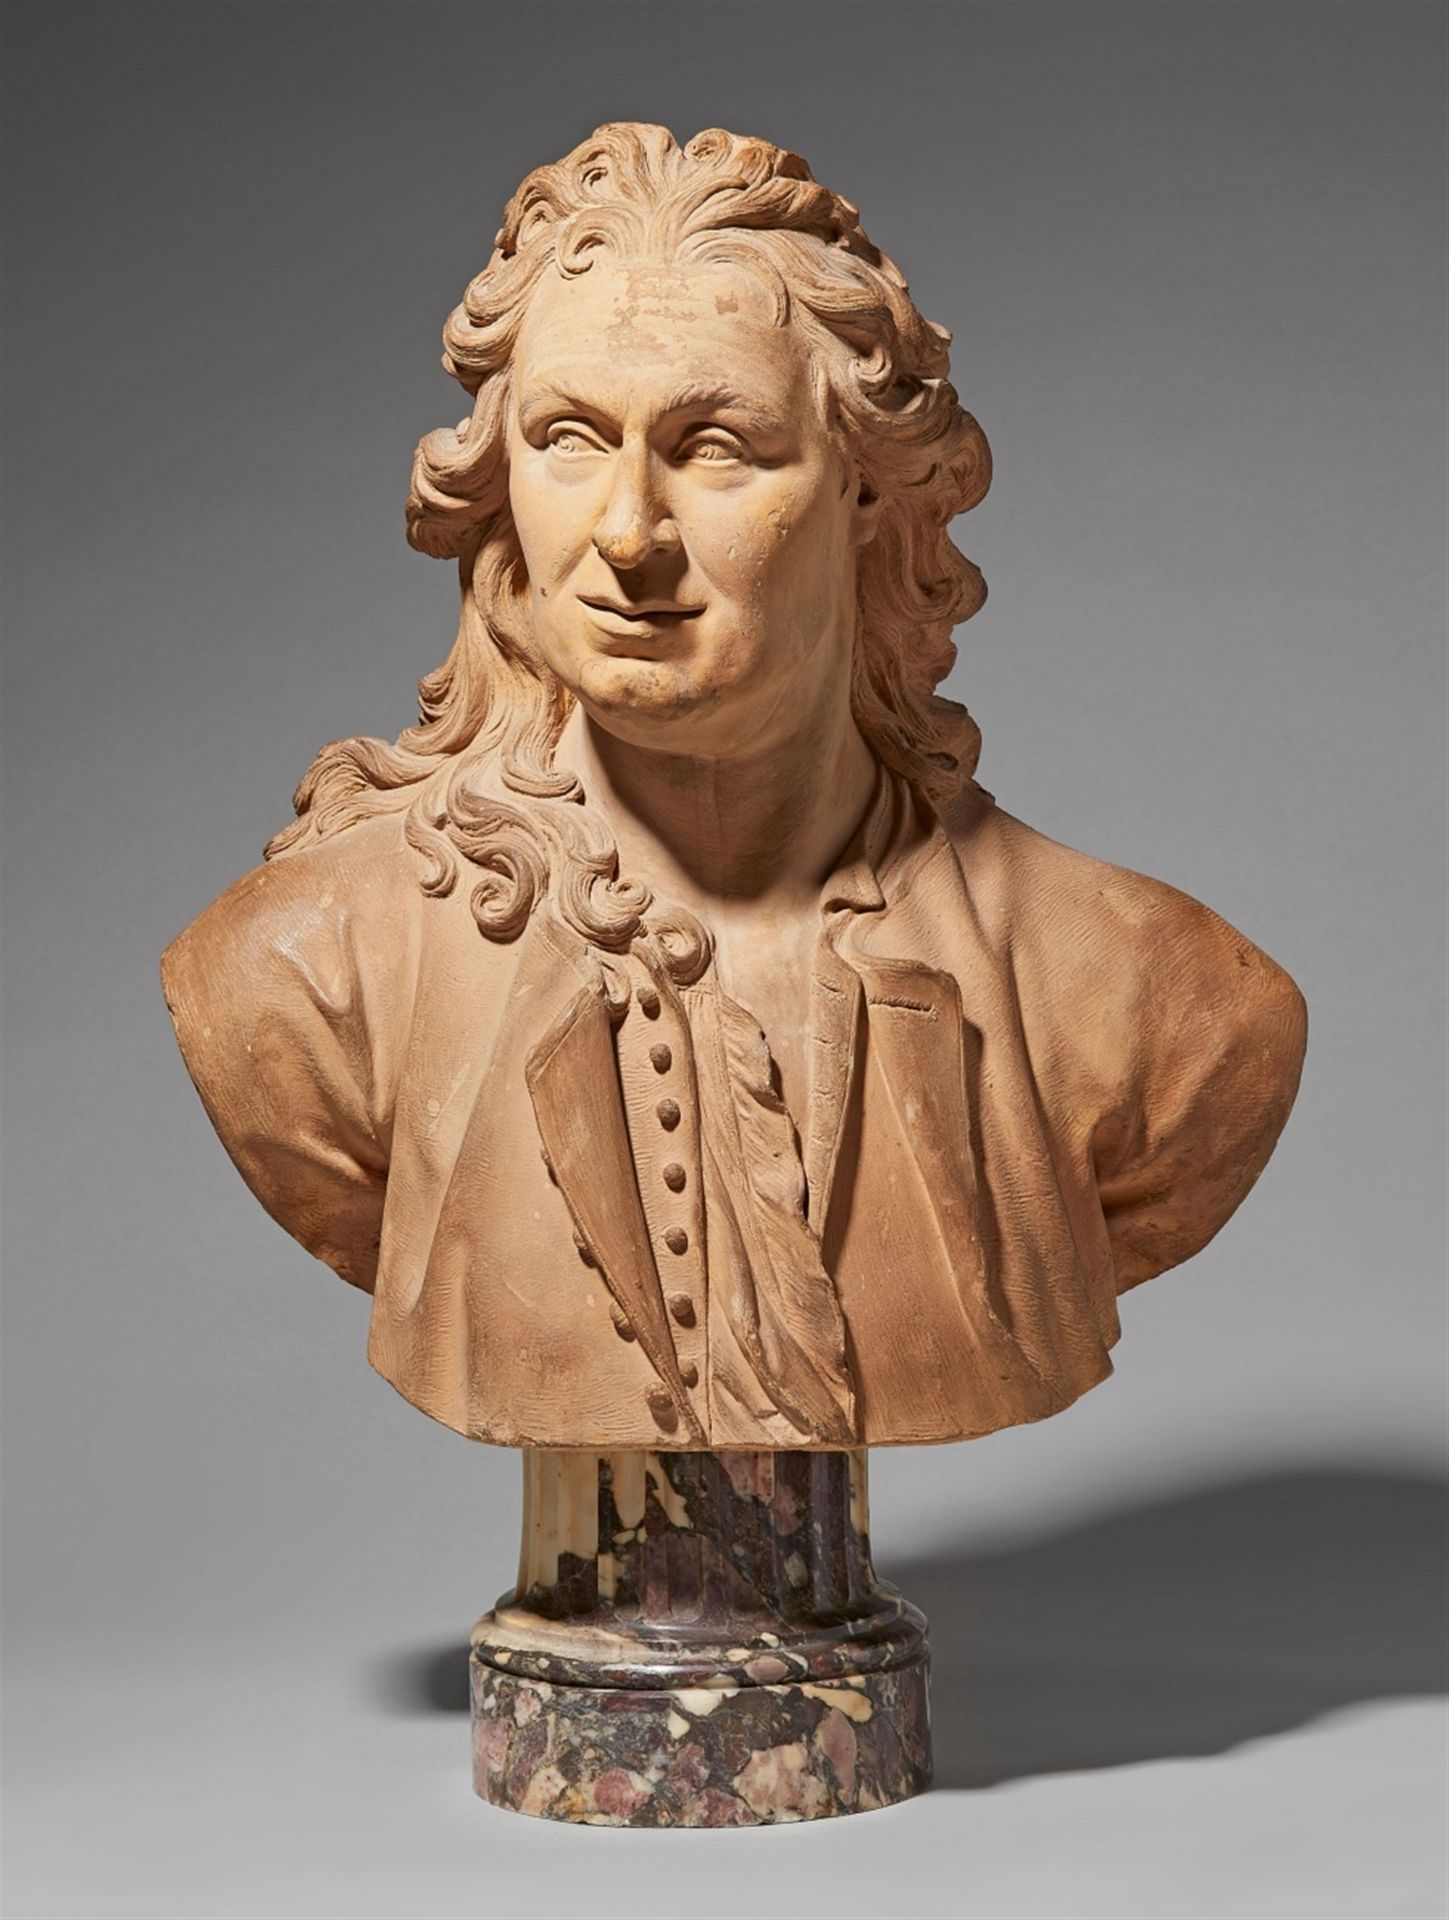 A terracotta bust of an artist